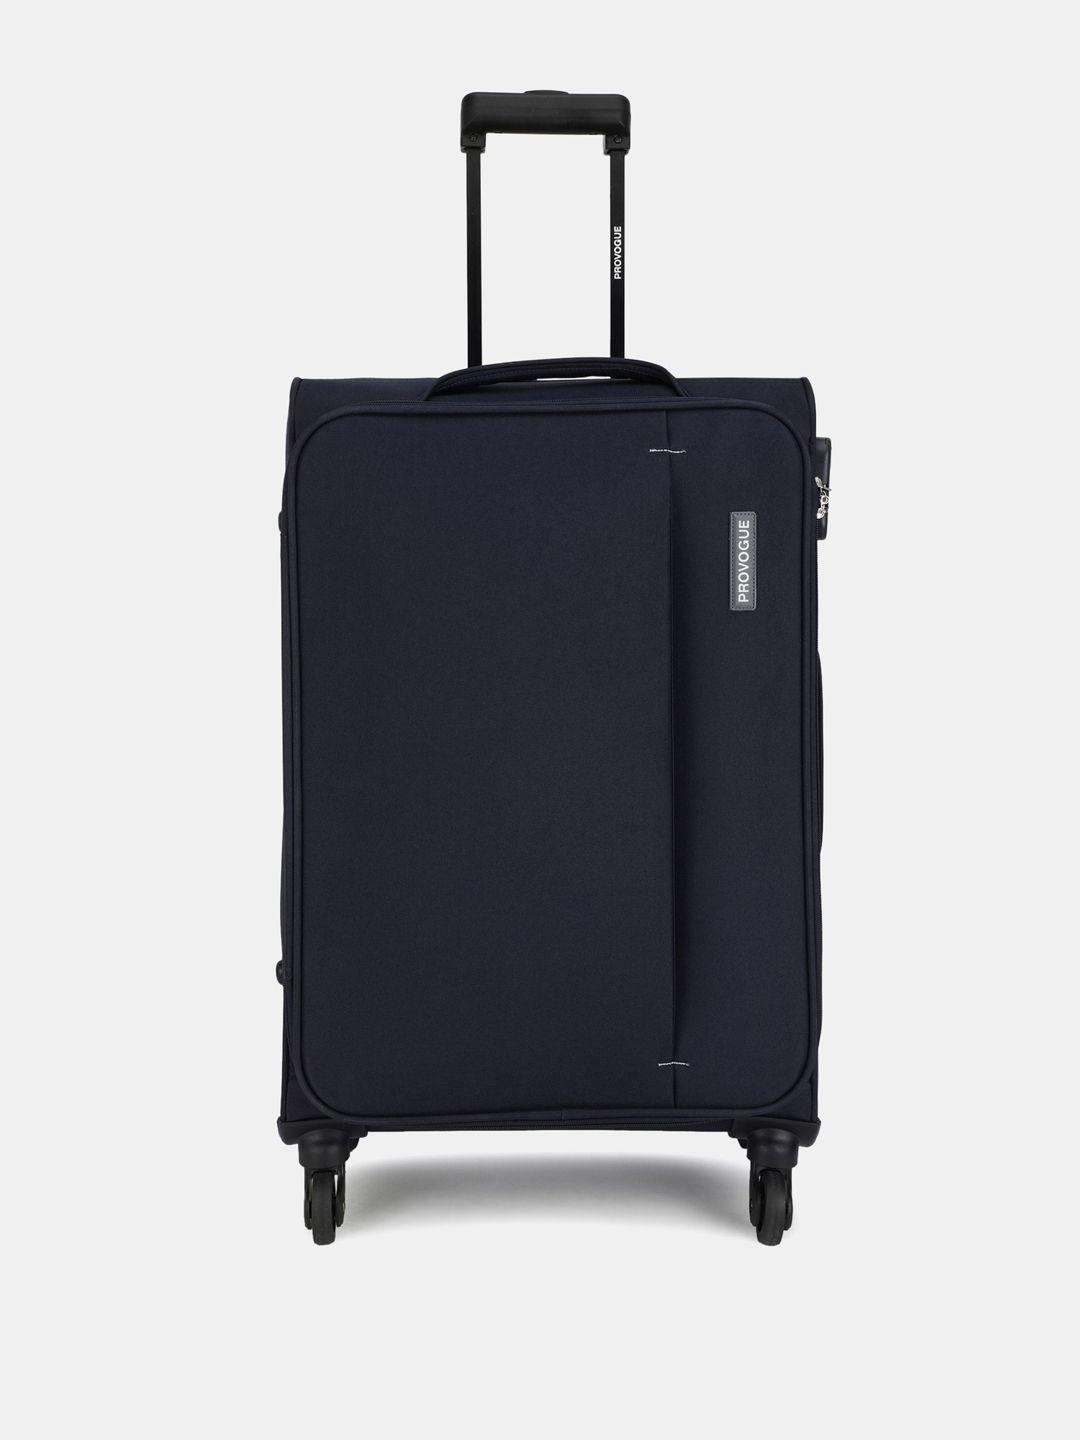 provogue unisex large trolley suitcase